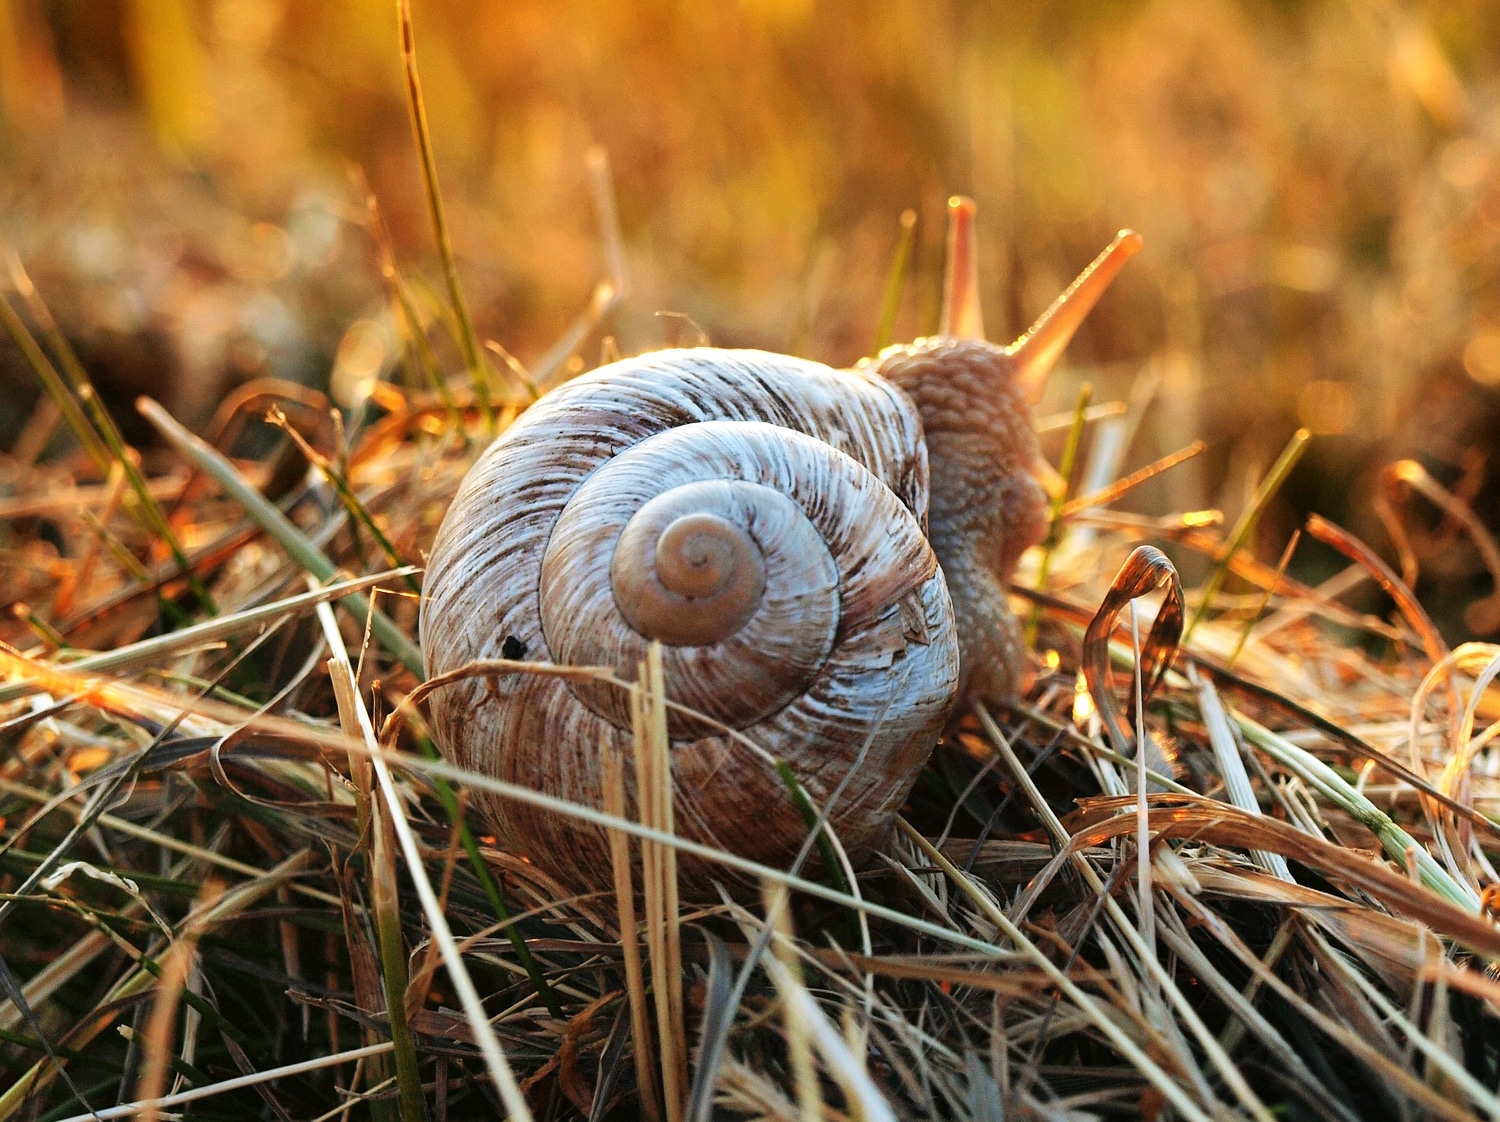 how long do snails sleep